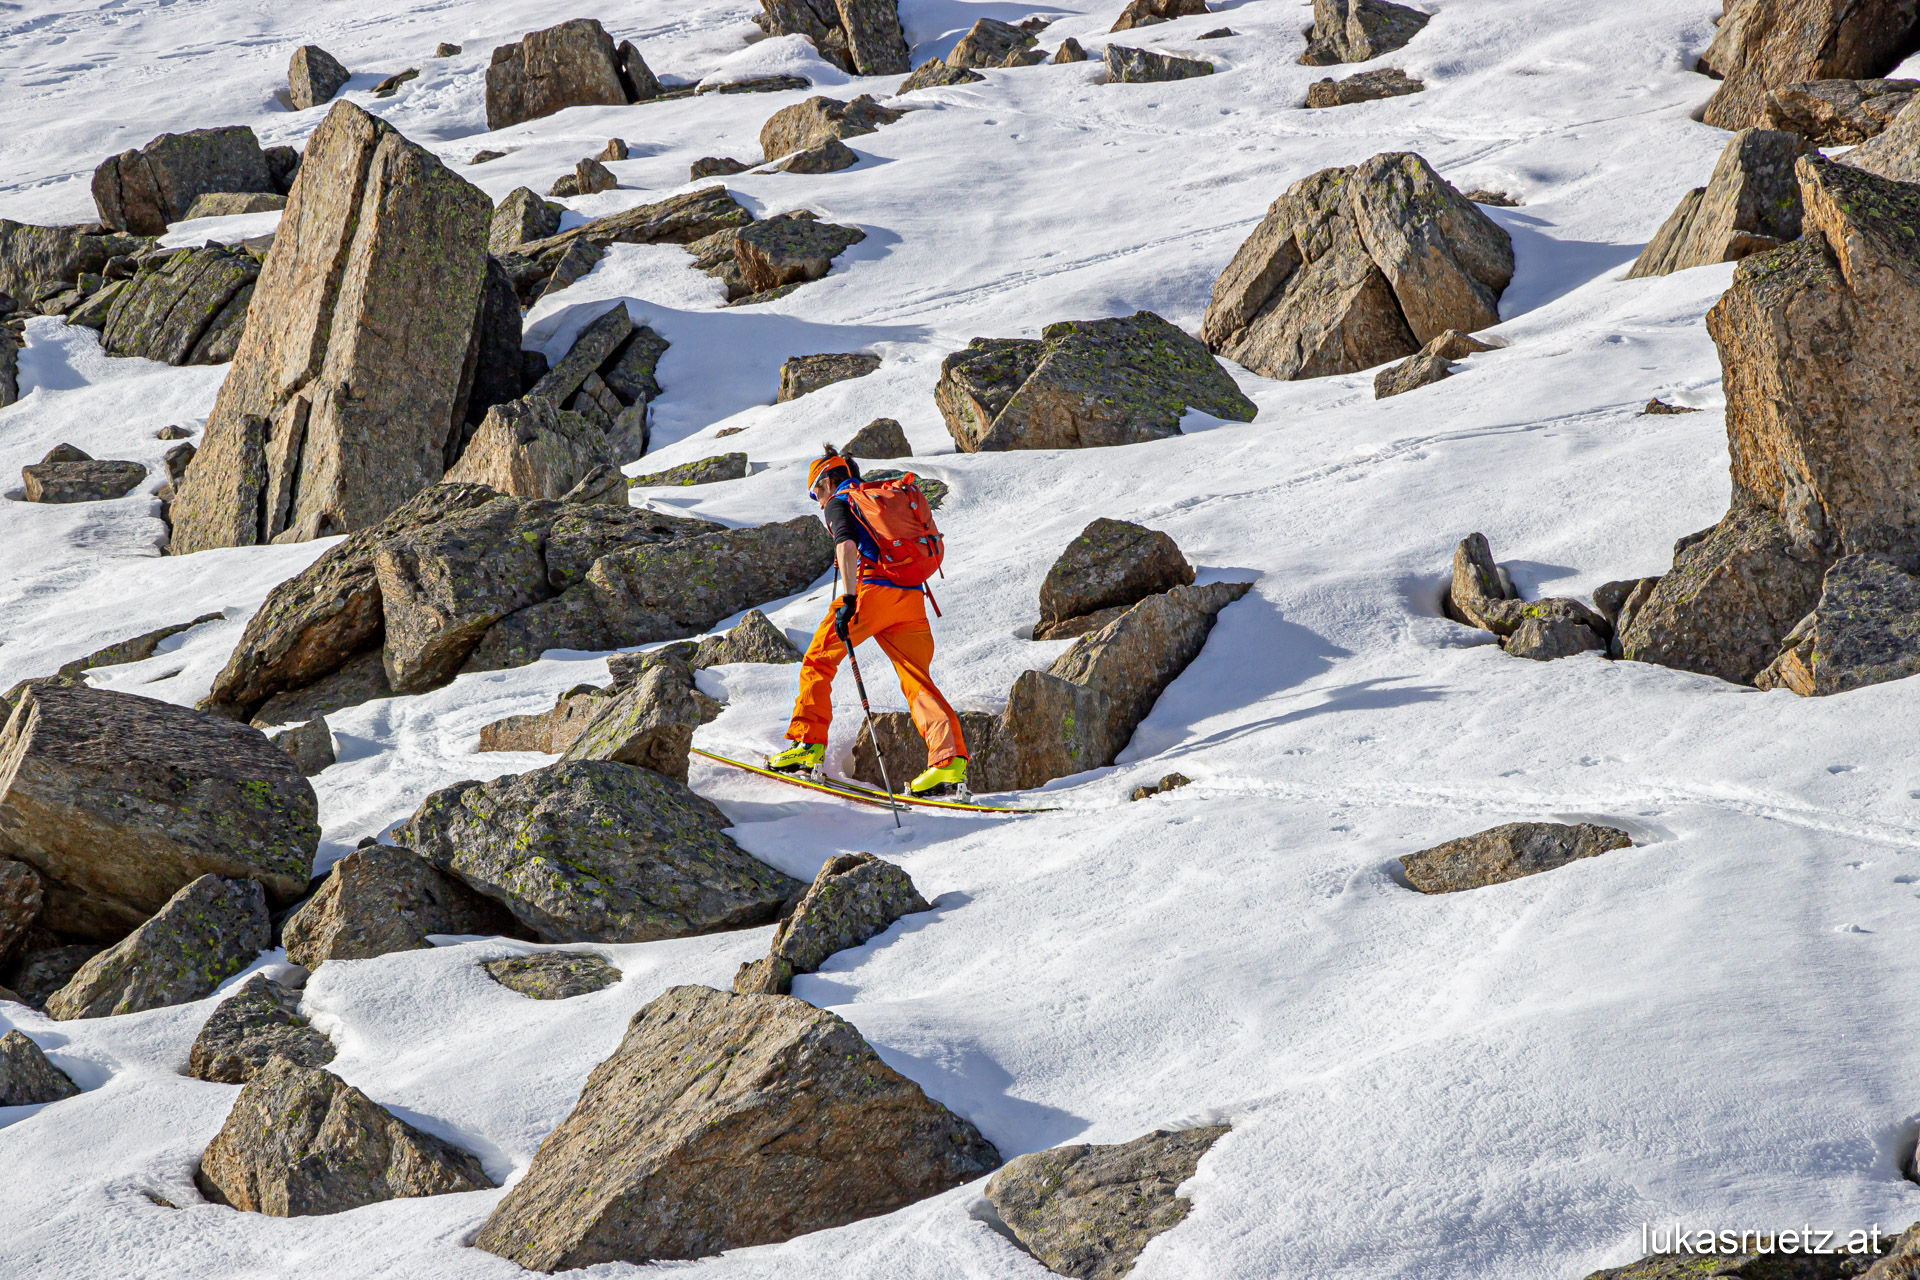 21.11.2020 | SchneeReport Kühtai-Sellraintal | #1 20/21 Skitouren kaum möglich